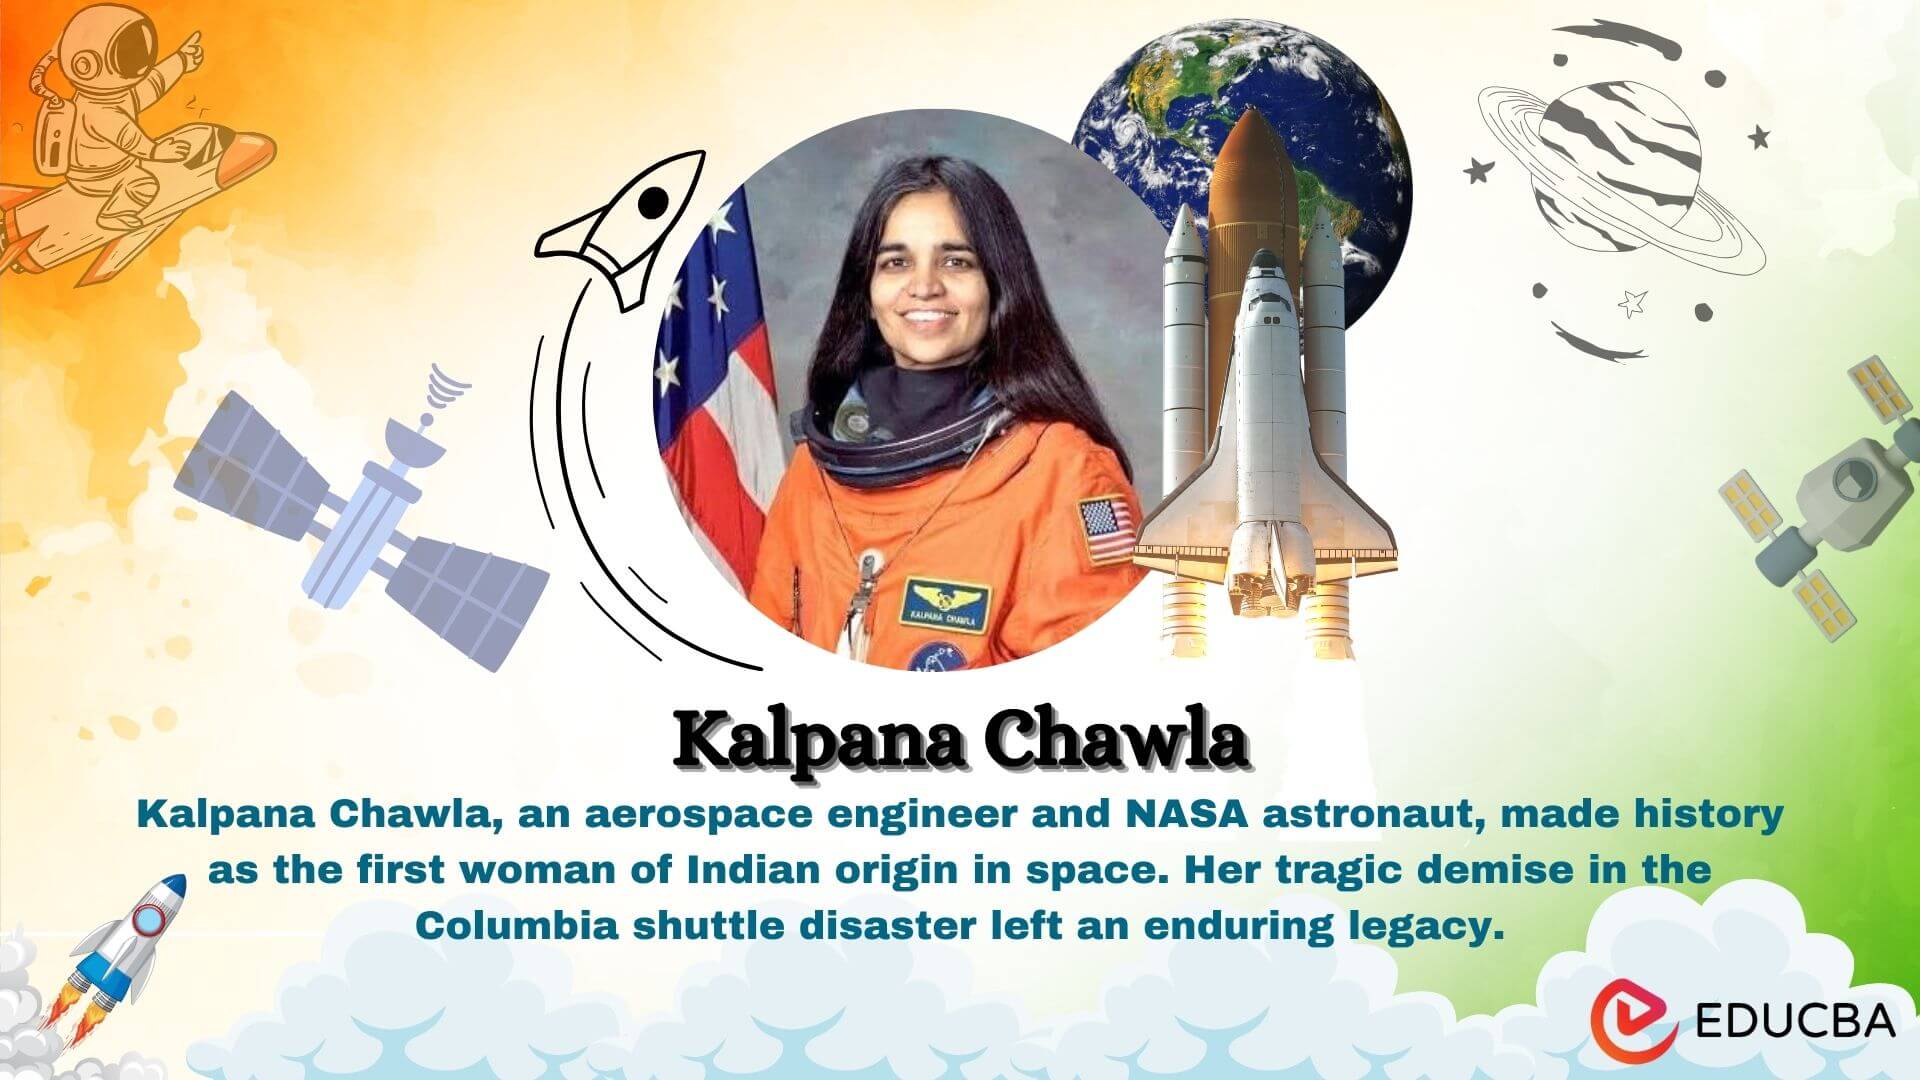 short essay about kalpana chawla